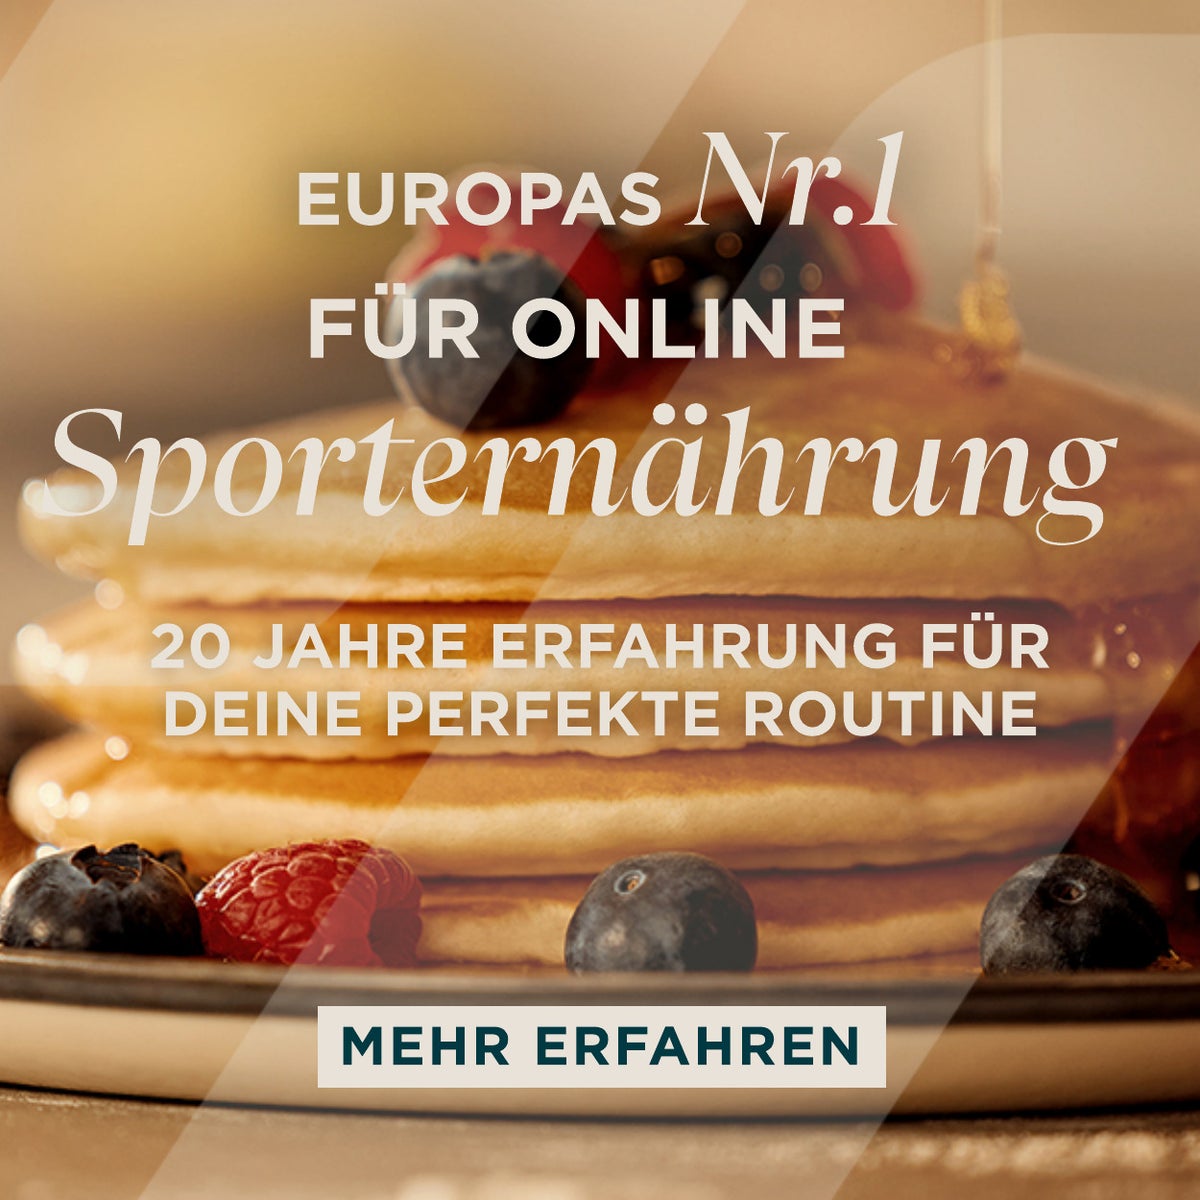 Europas Nummer 1 Online-Sporternährungsmarke mit 20 Jahre Erfahrung zur Perfektionierung deiner Routine.